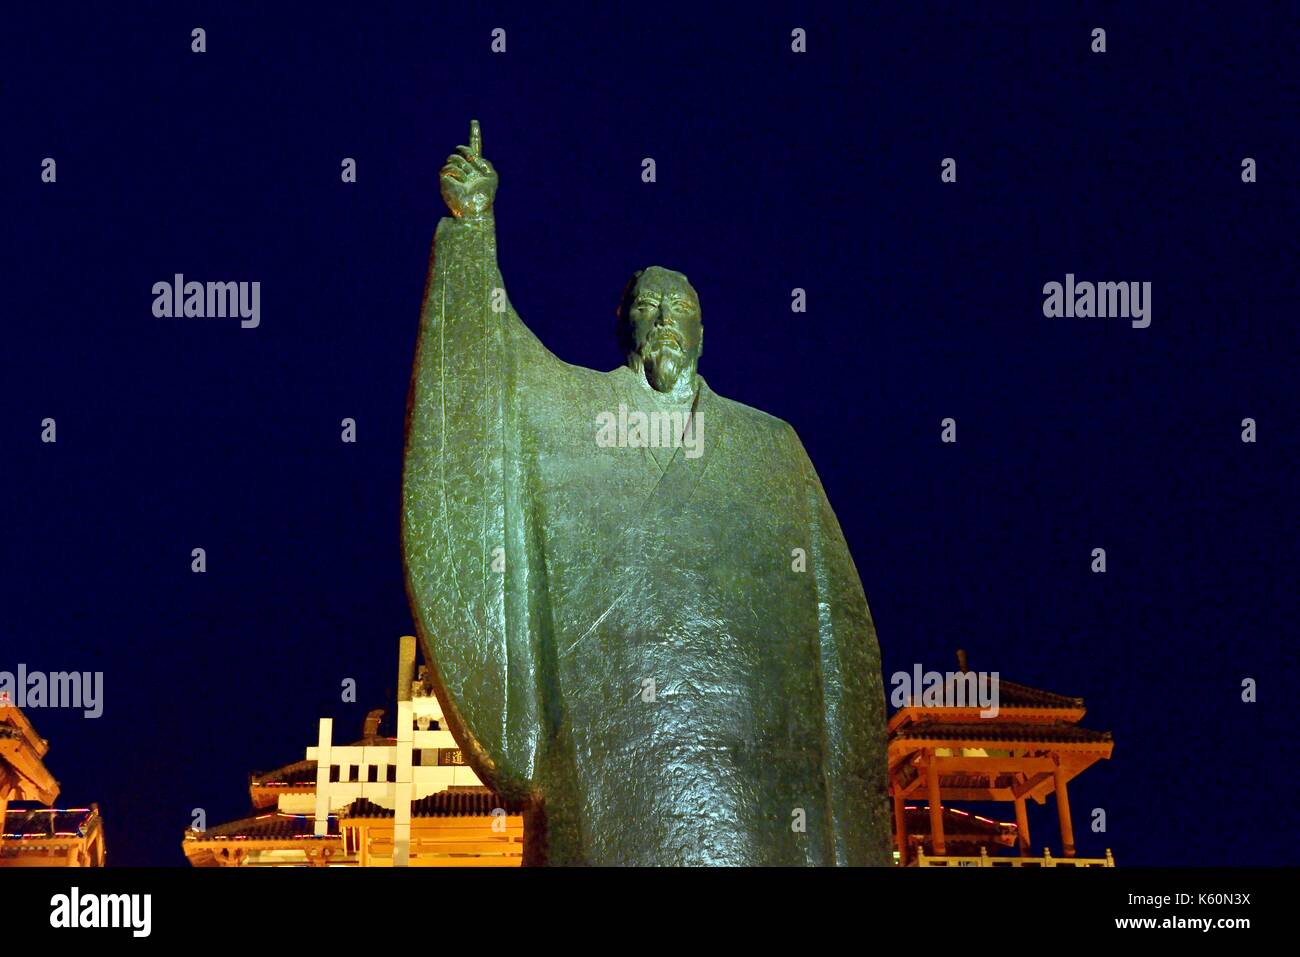 Dongzi culture park, une célébration de dong zhongshu philosophe confucéen. ville de Qingdao, Chine. statue en bronze de dong zhongshu Banque D'Images